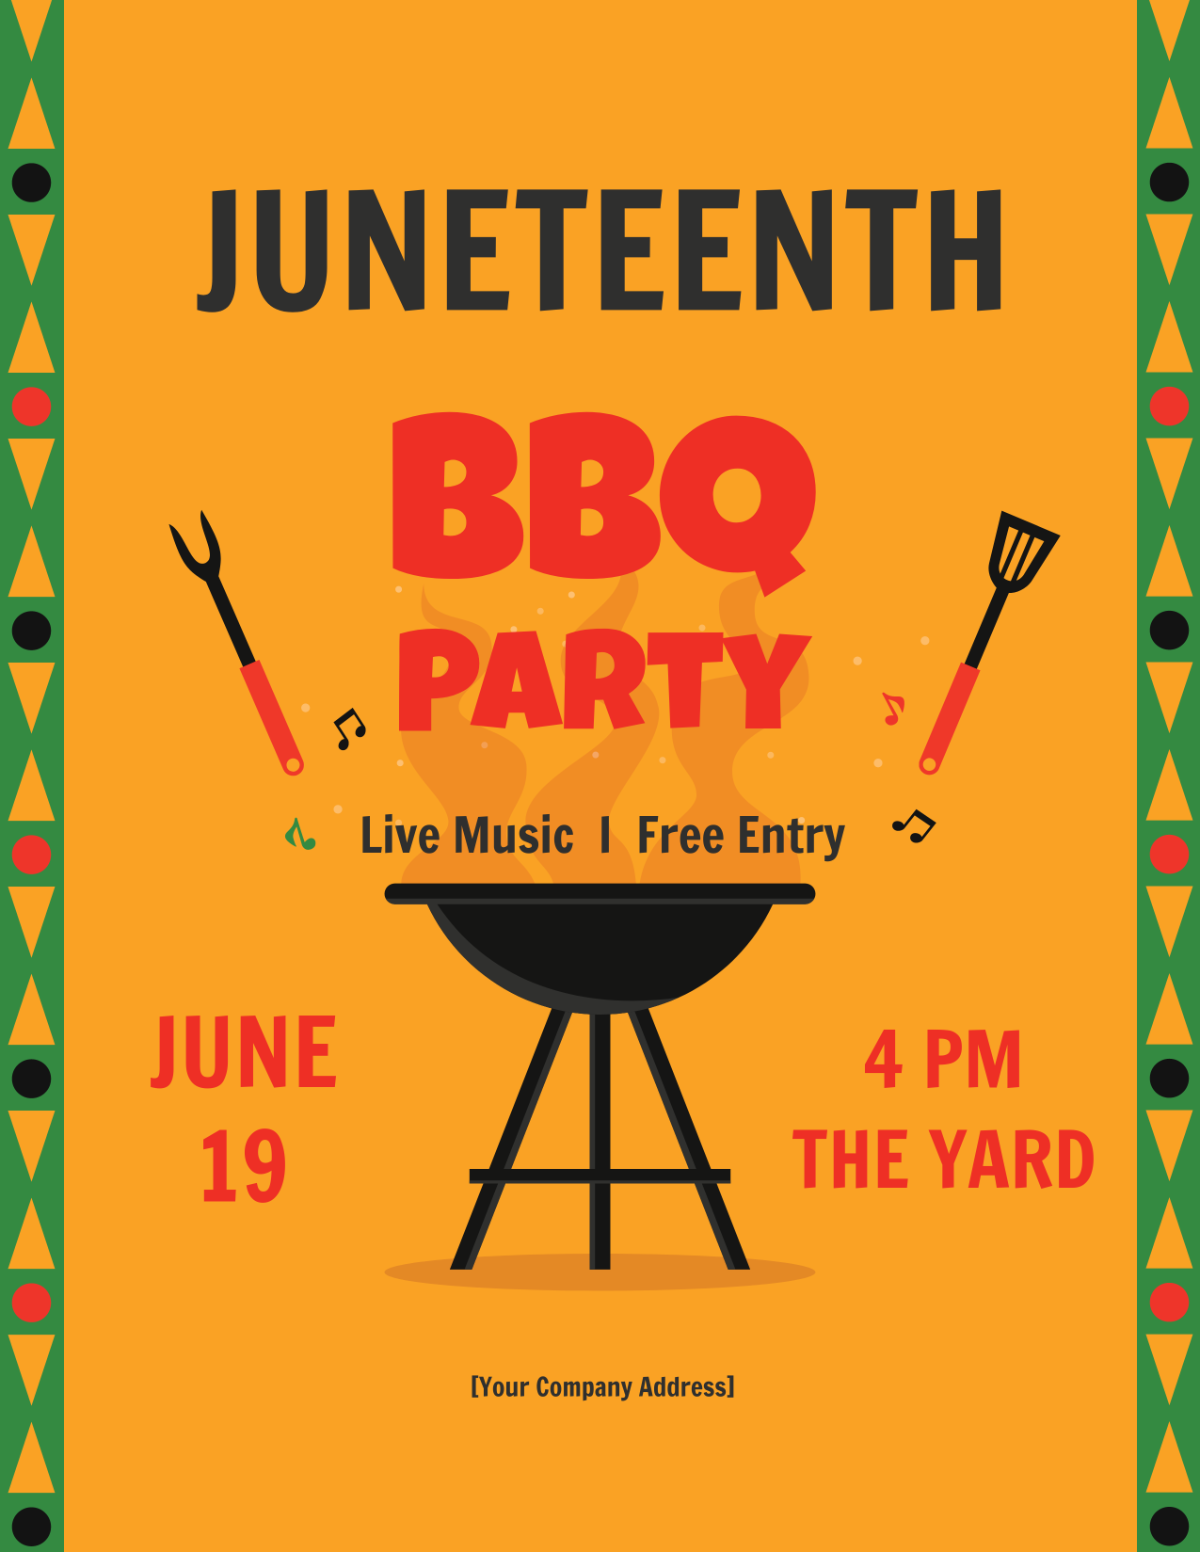 Juneteenth BBQ Flyer